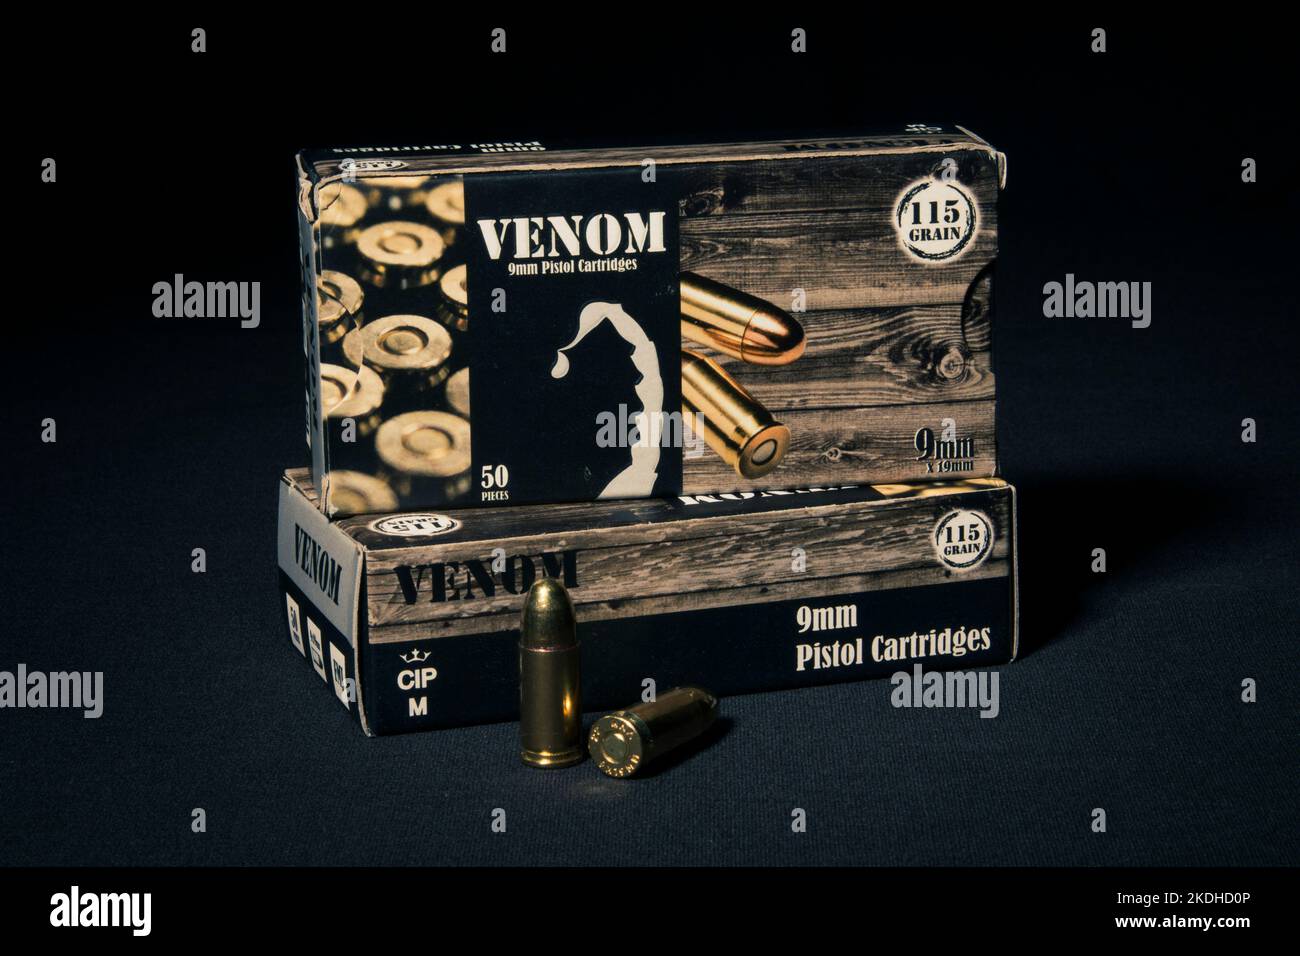 Venom 9mm Ammunition Stock Photo